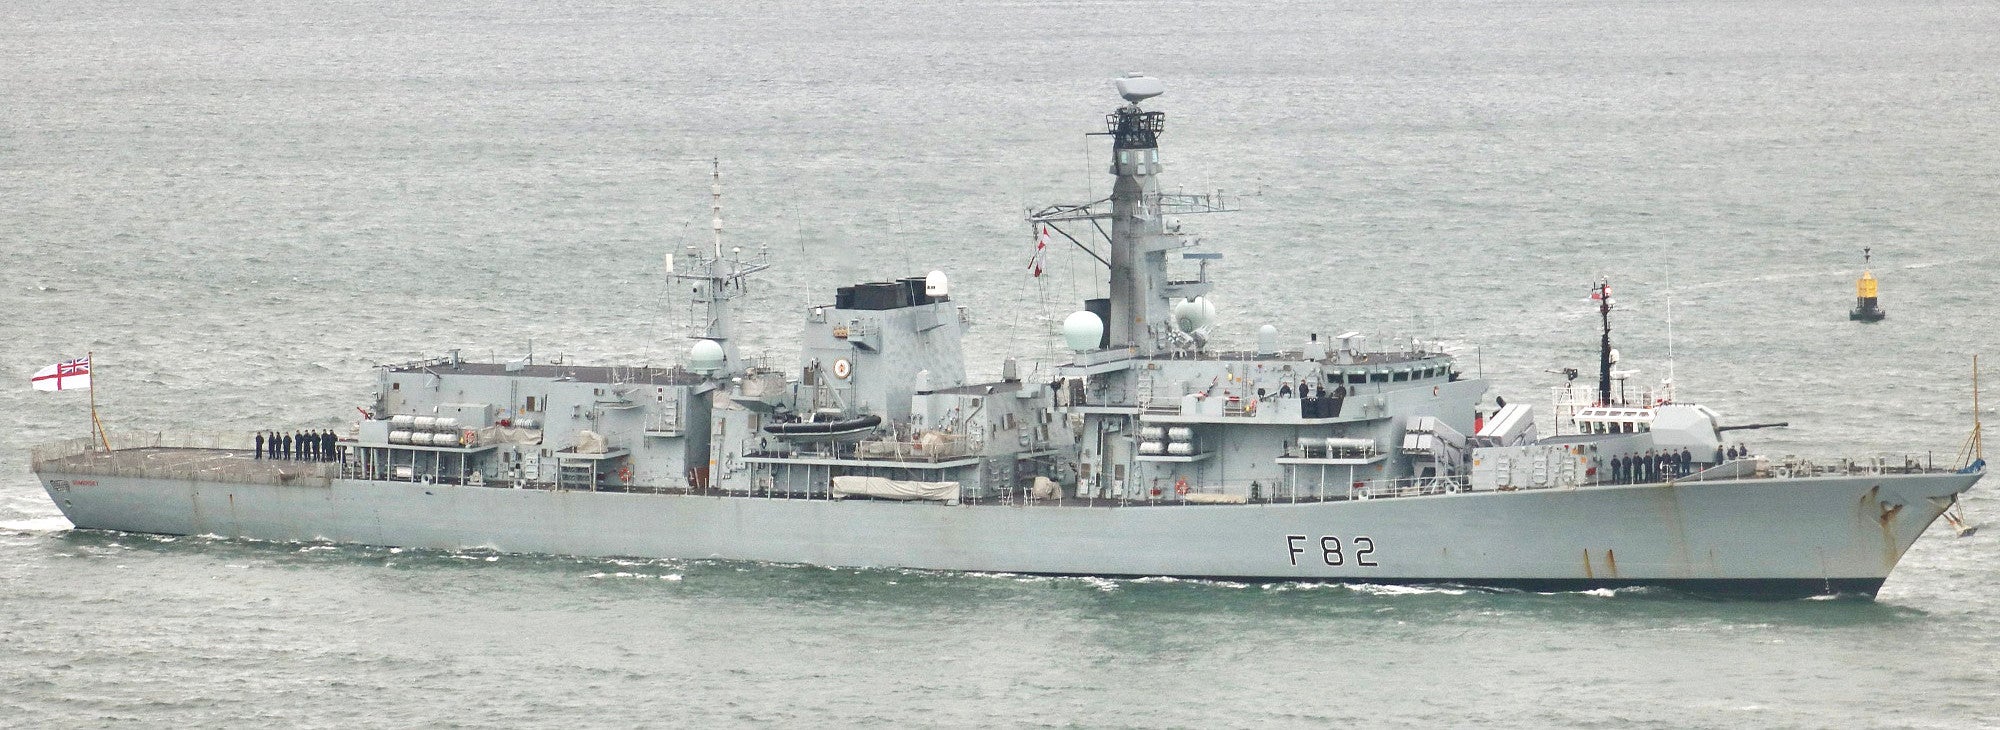 naval strike missiles have arrived aboard royal navy warships